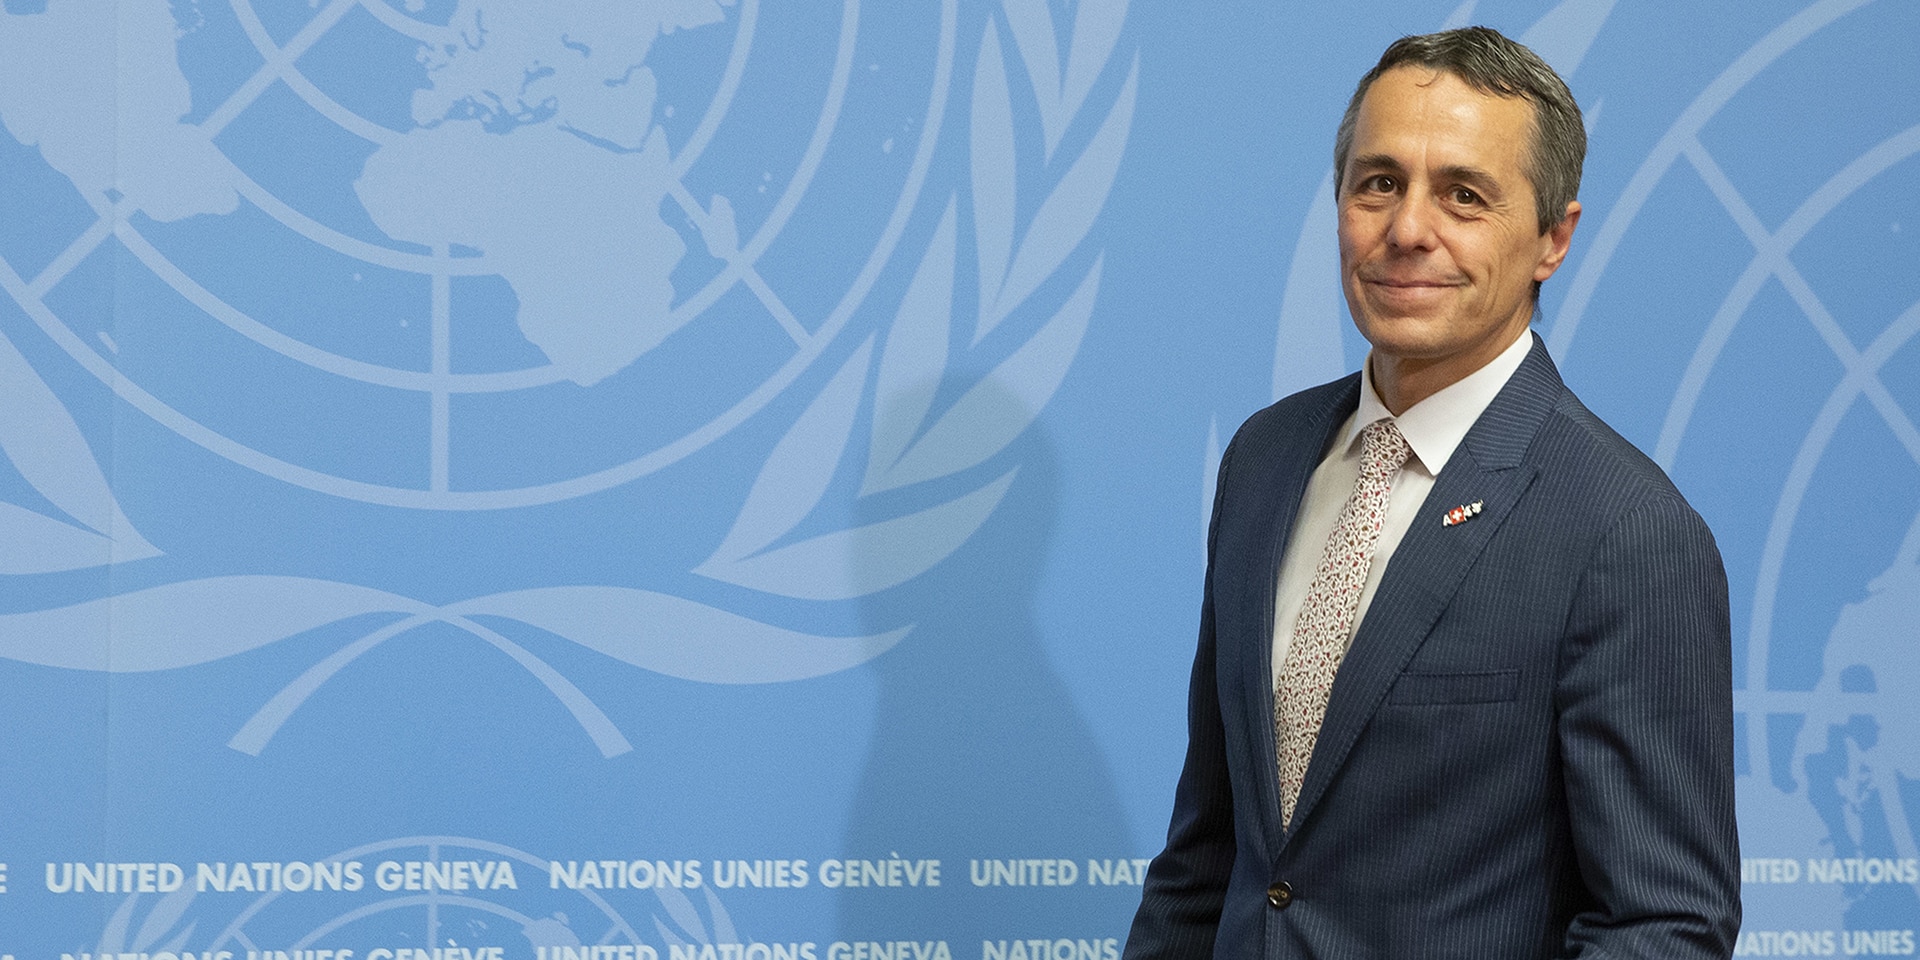 consigliere federale Ignazio Cassis sta davanti a un podio, dietro di lui un muro con il logo dell'ONU.